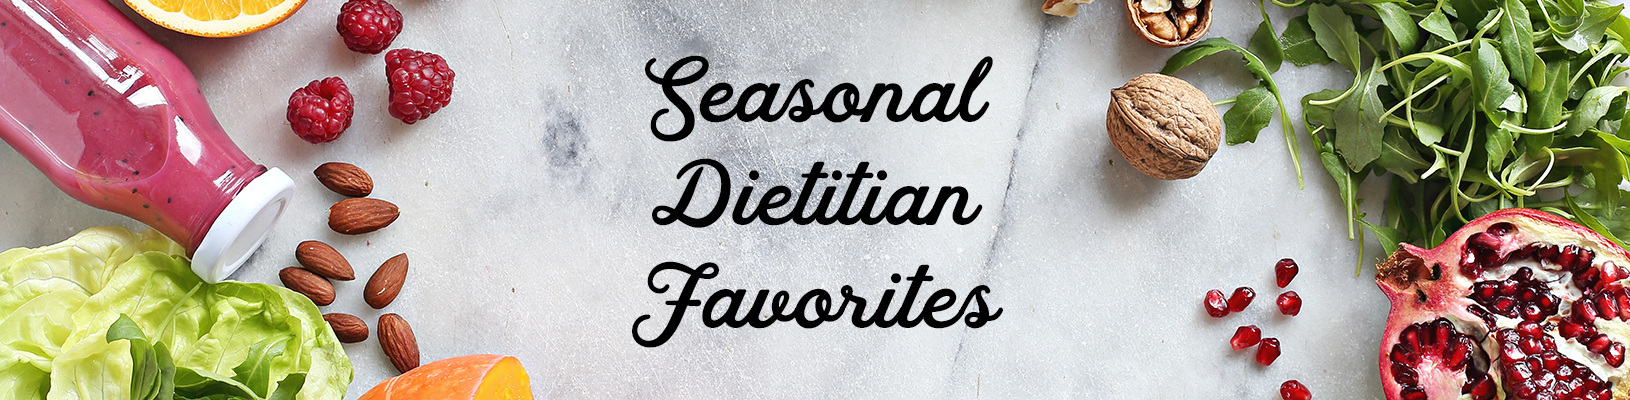 Seasonal Dietitian Favorites